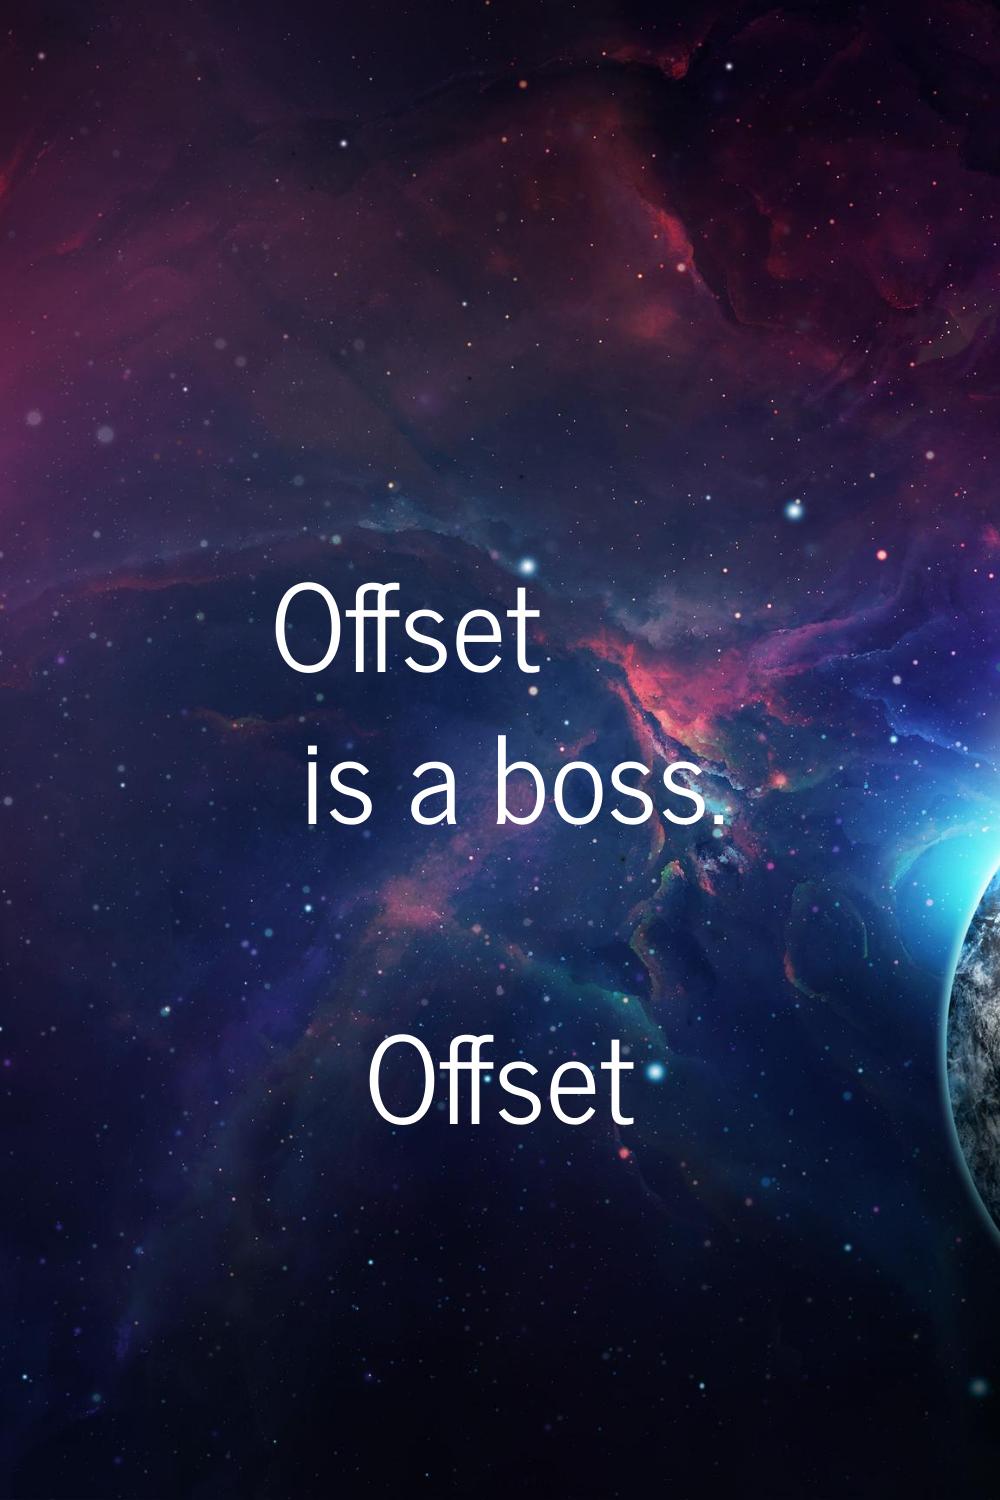 Offset is a boss.